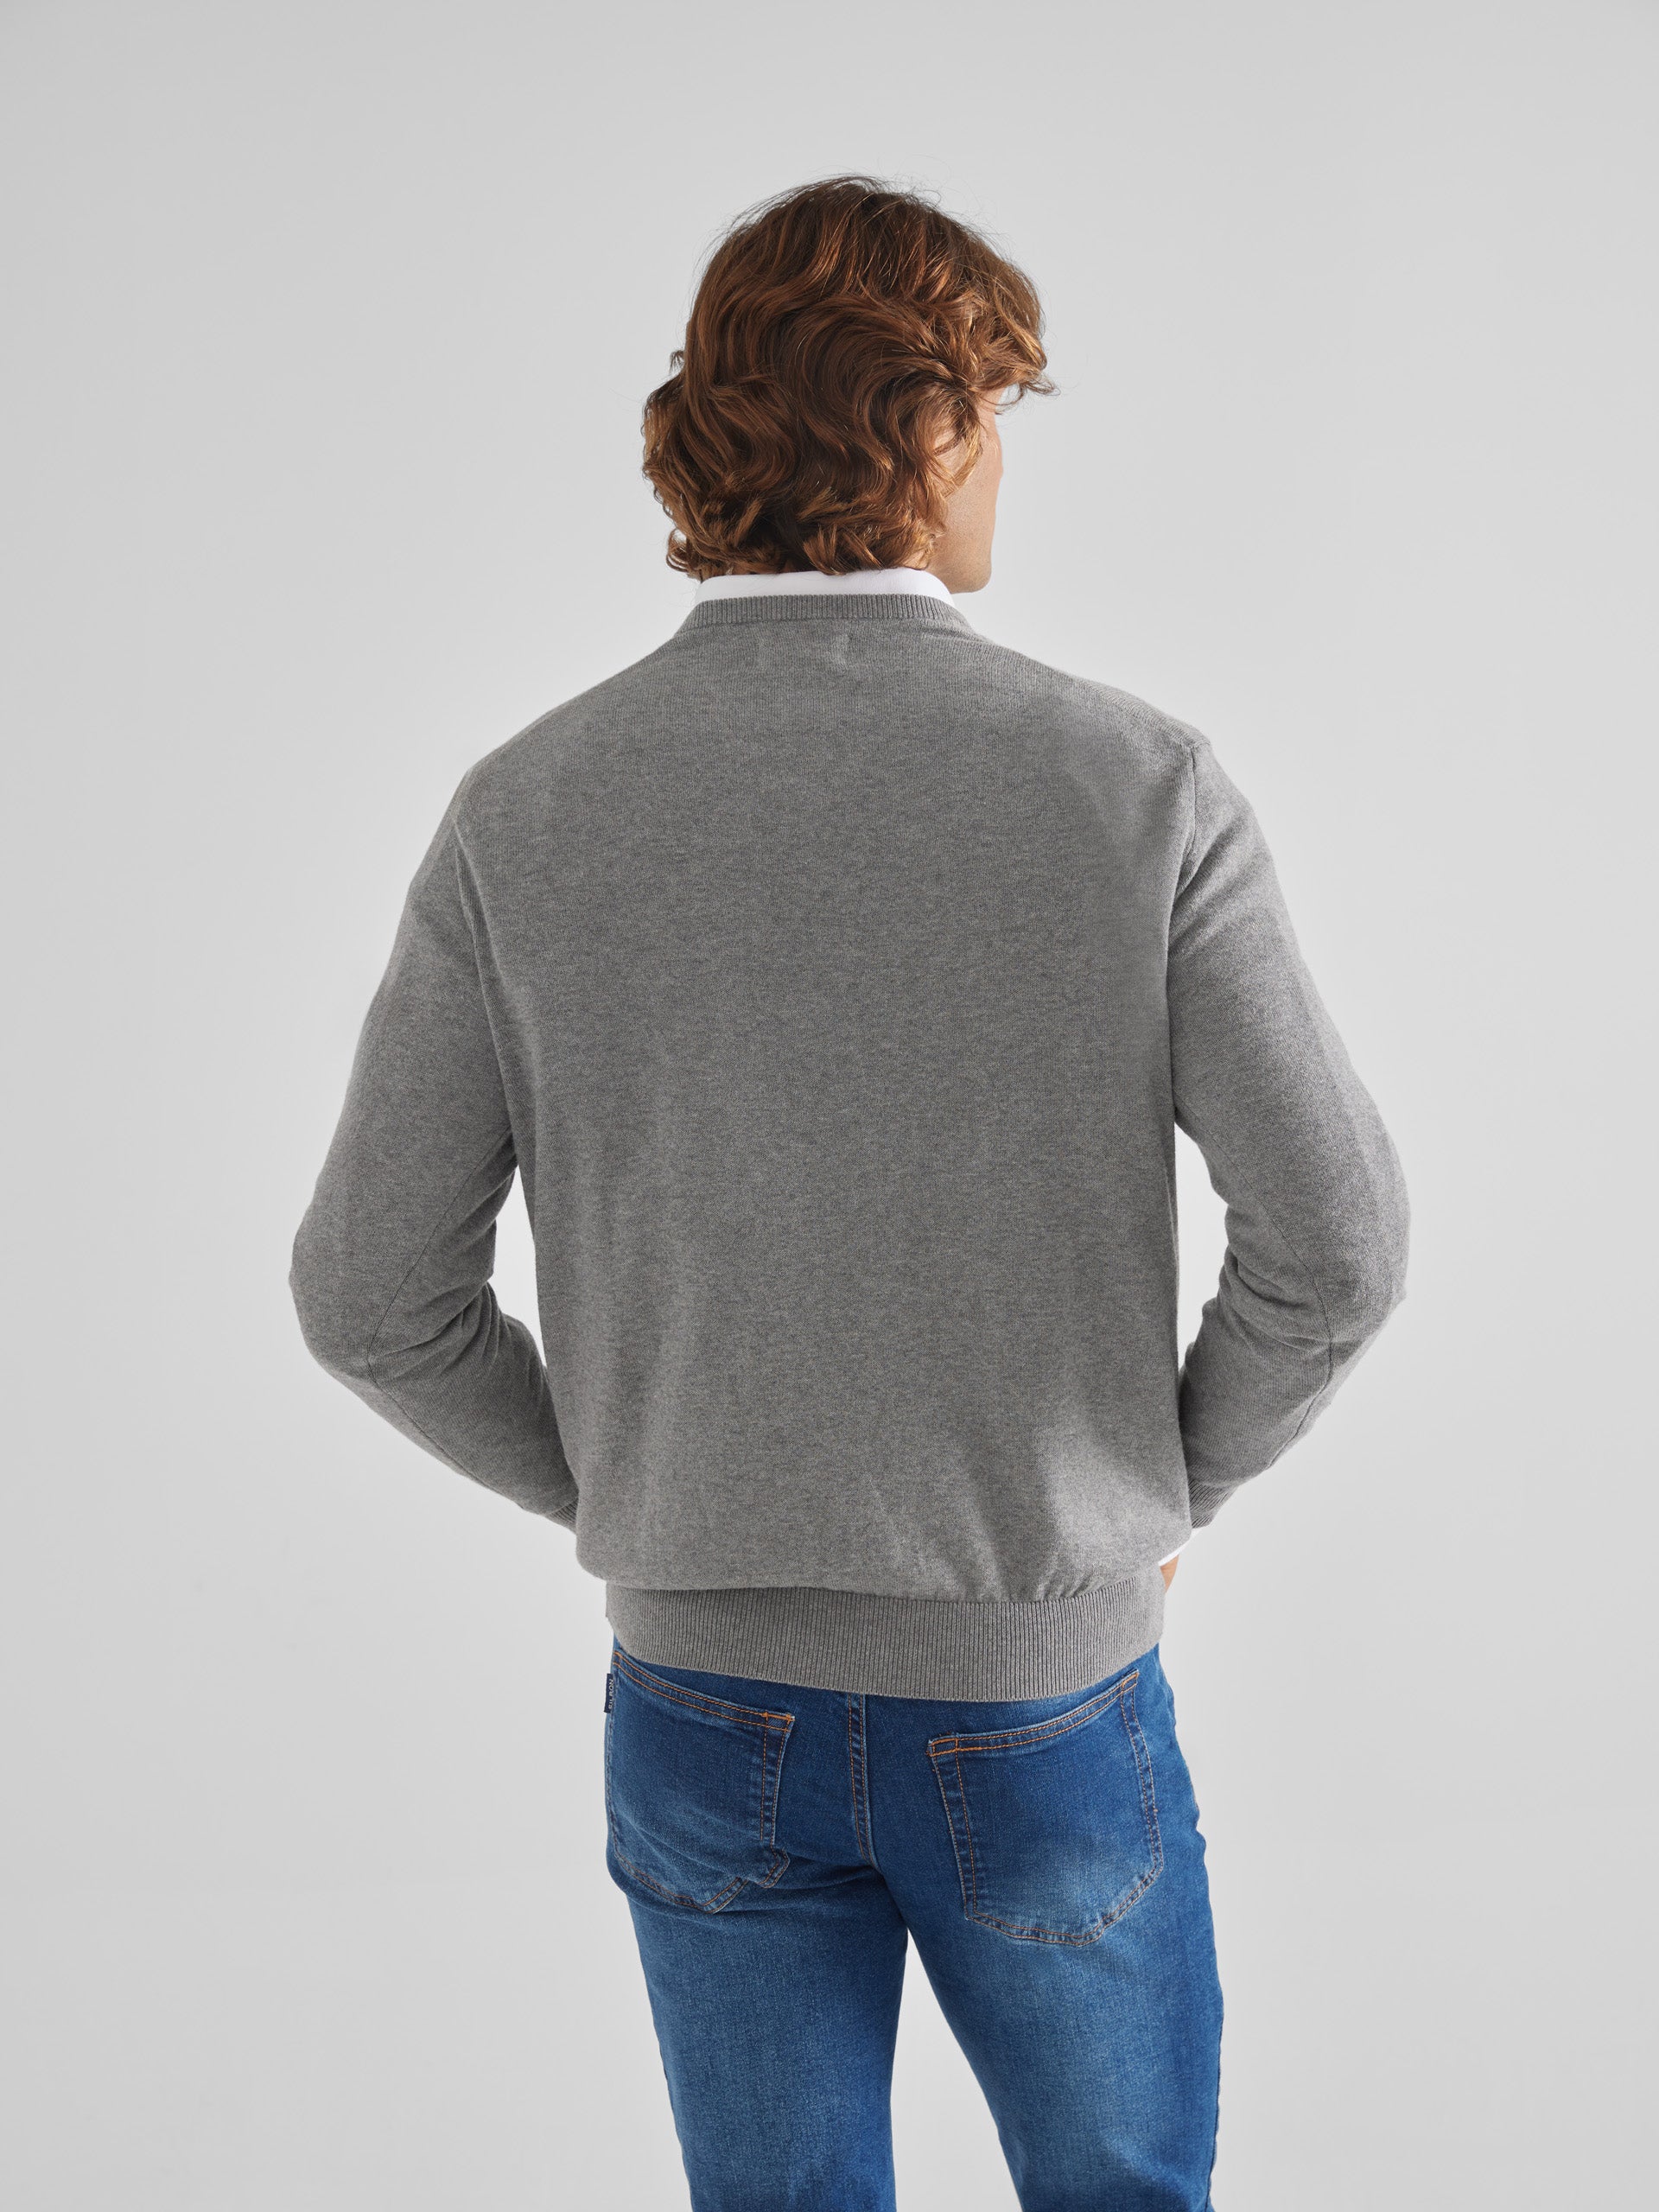 Plain gray V-neck sweater